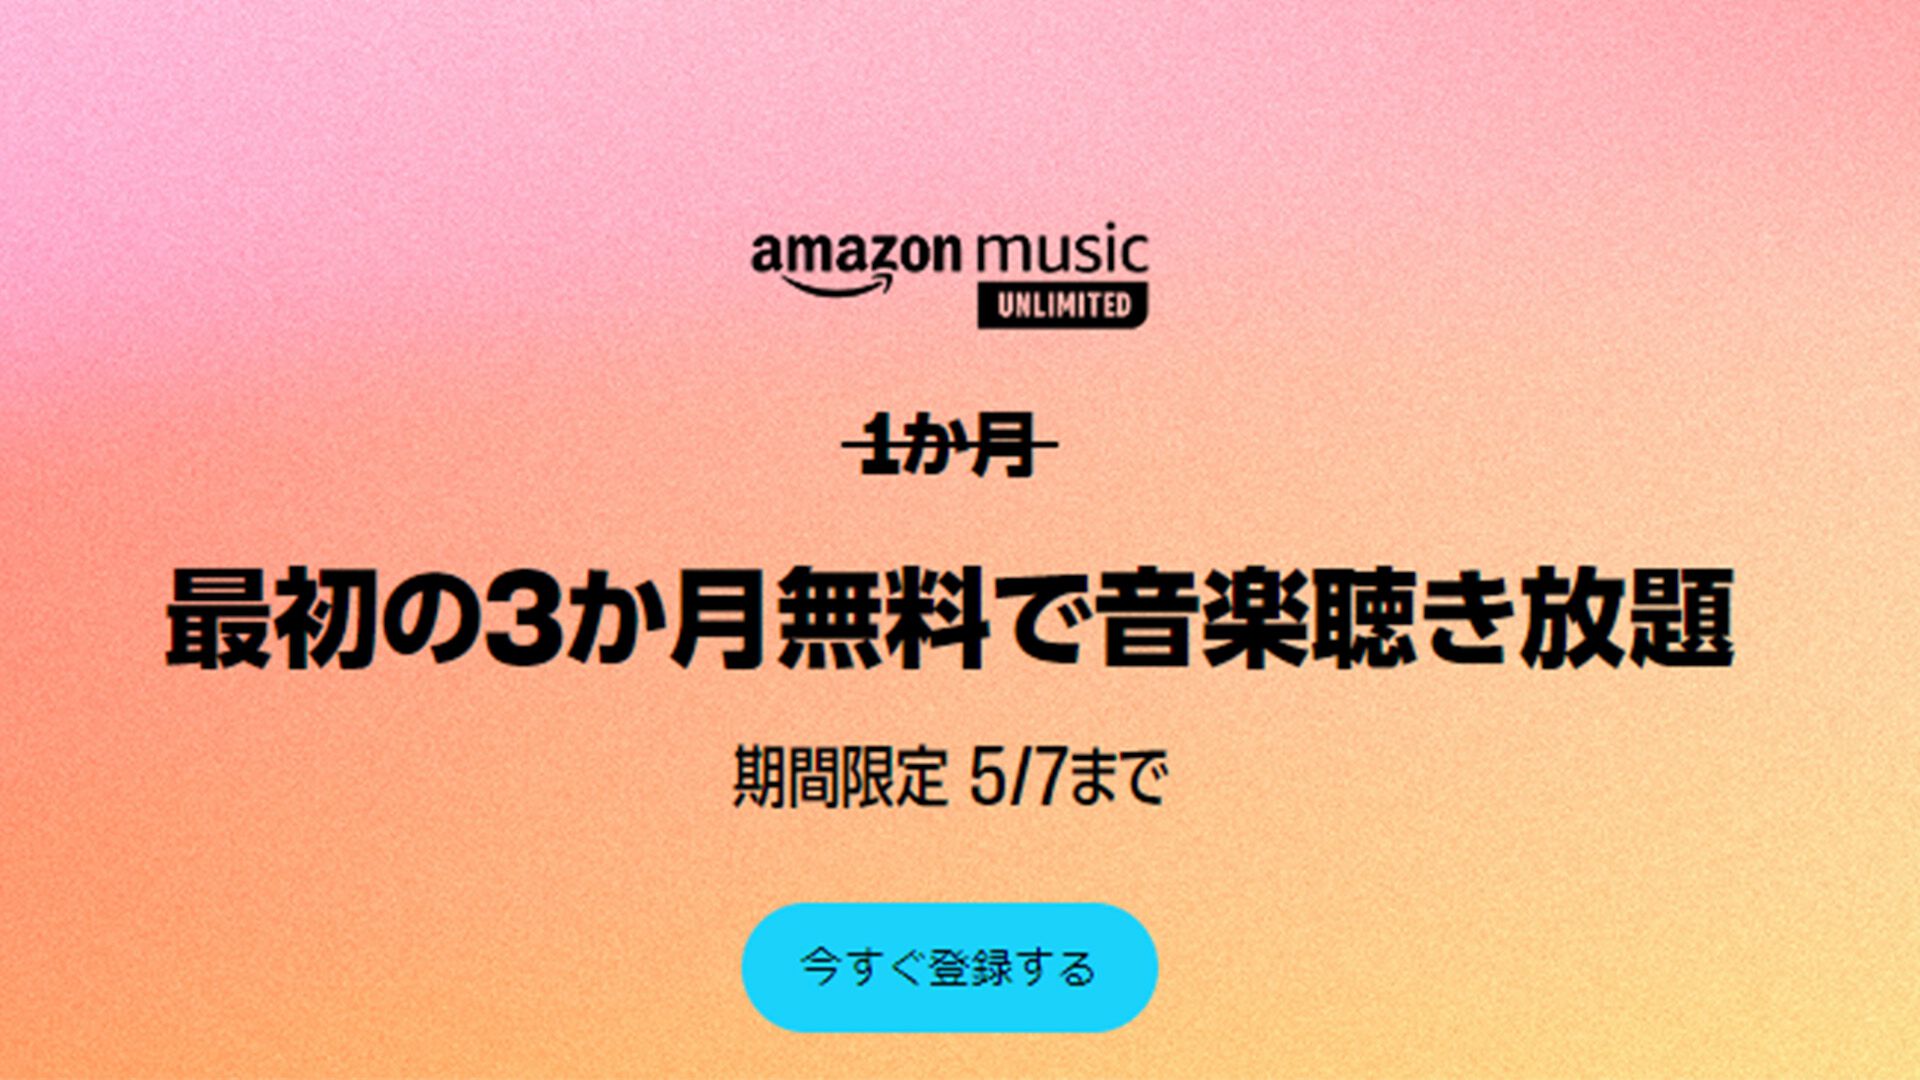 “Amazon Music Unlimited”3ヵ月無料キャンペーン実施中。『MOTHER』や『ペルソナ５』のサントラが聴き放題